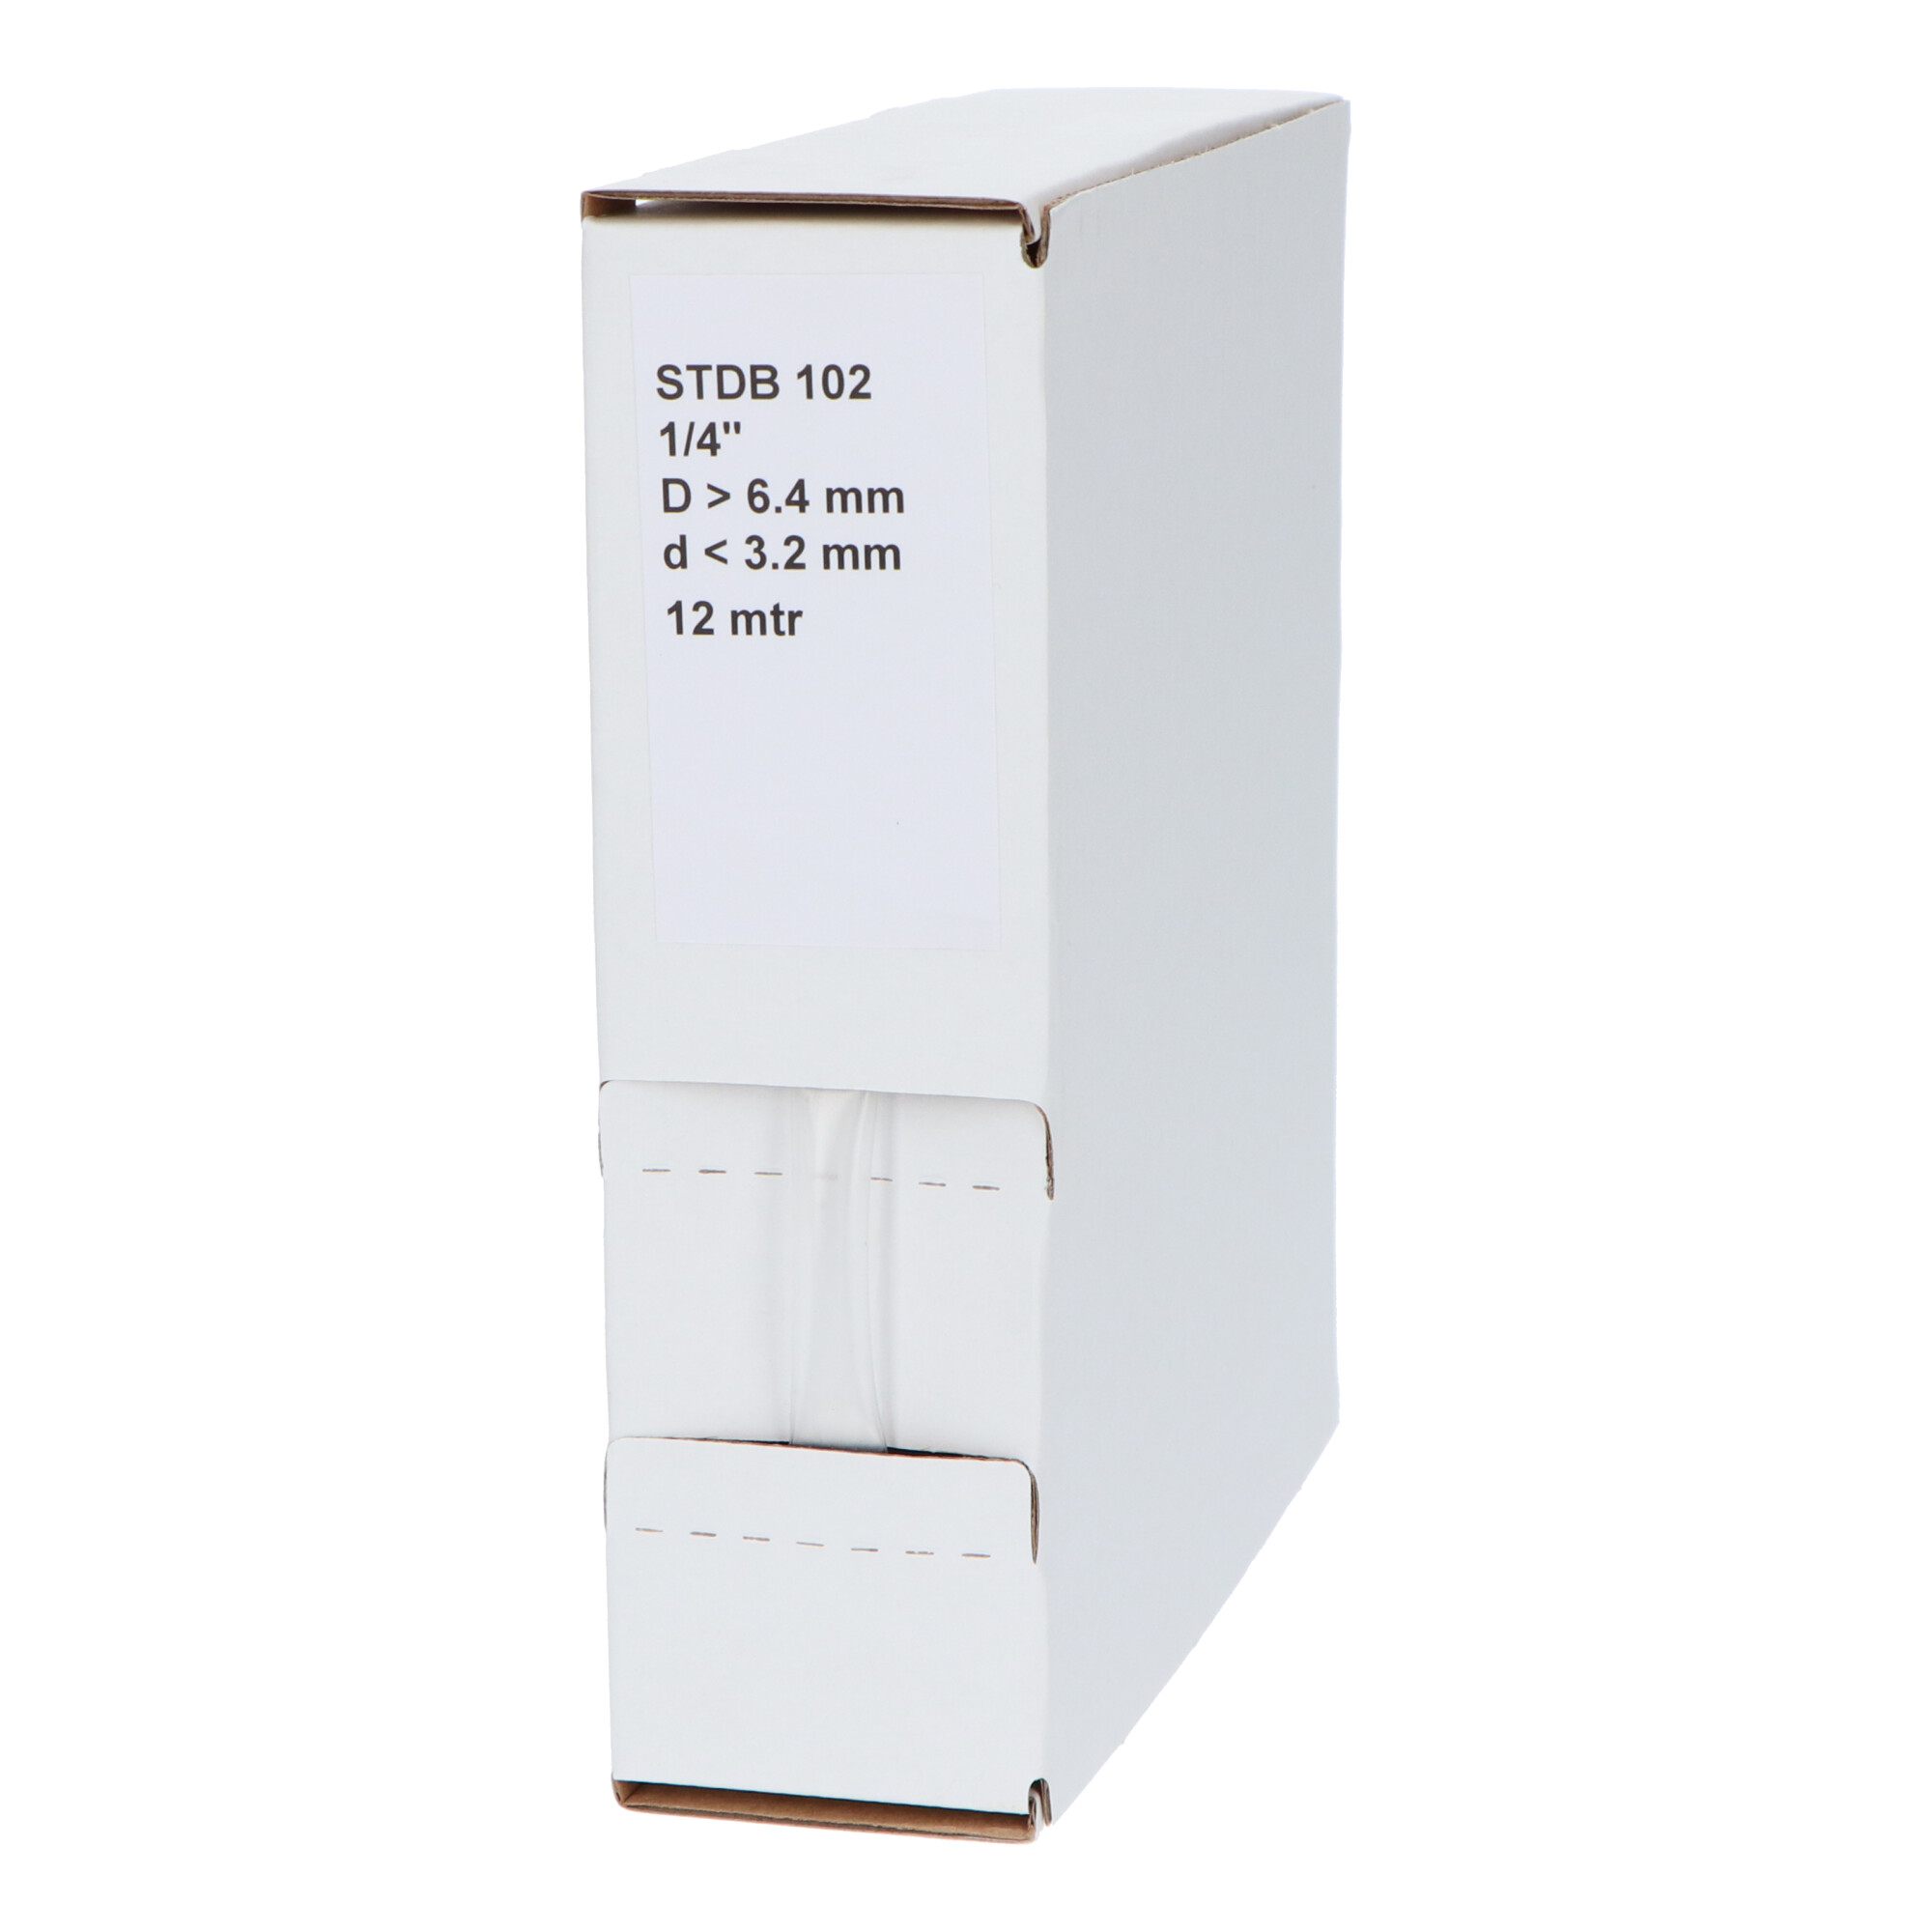 29-22001210G STDB 102 Krimpkous STDB 102 | 2:1 in dispenser box